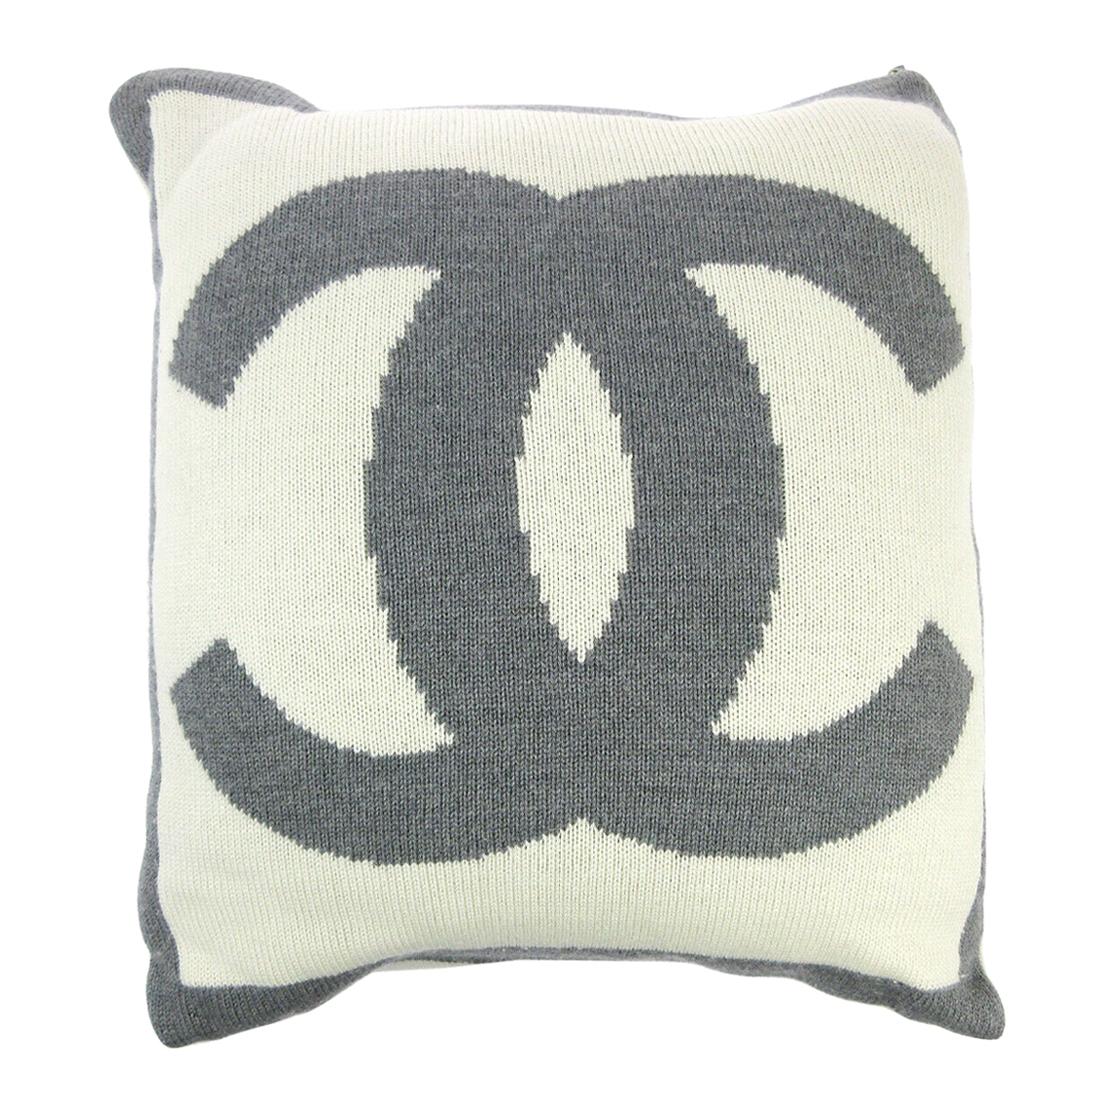 coco chanel pillows decorative throw pillows